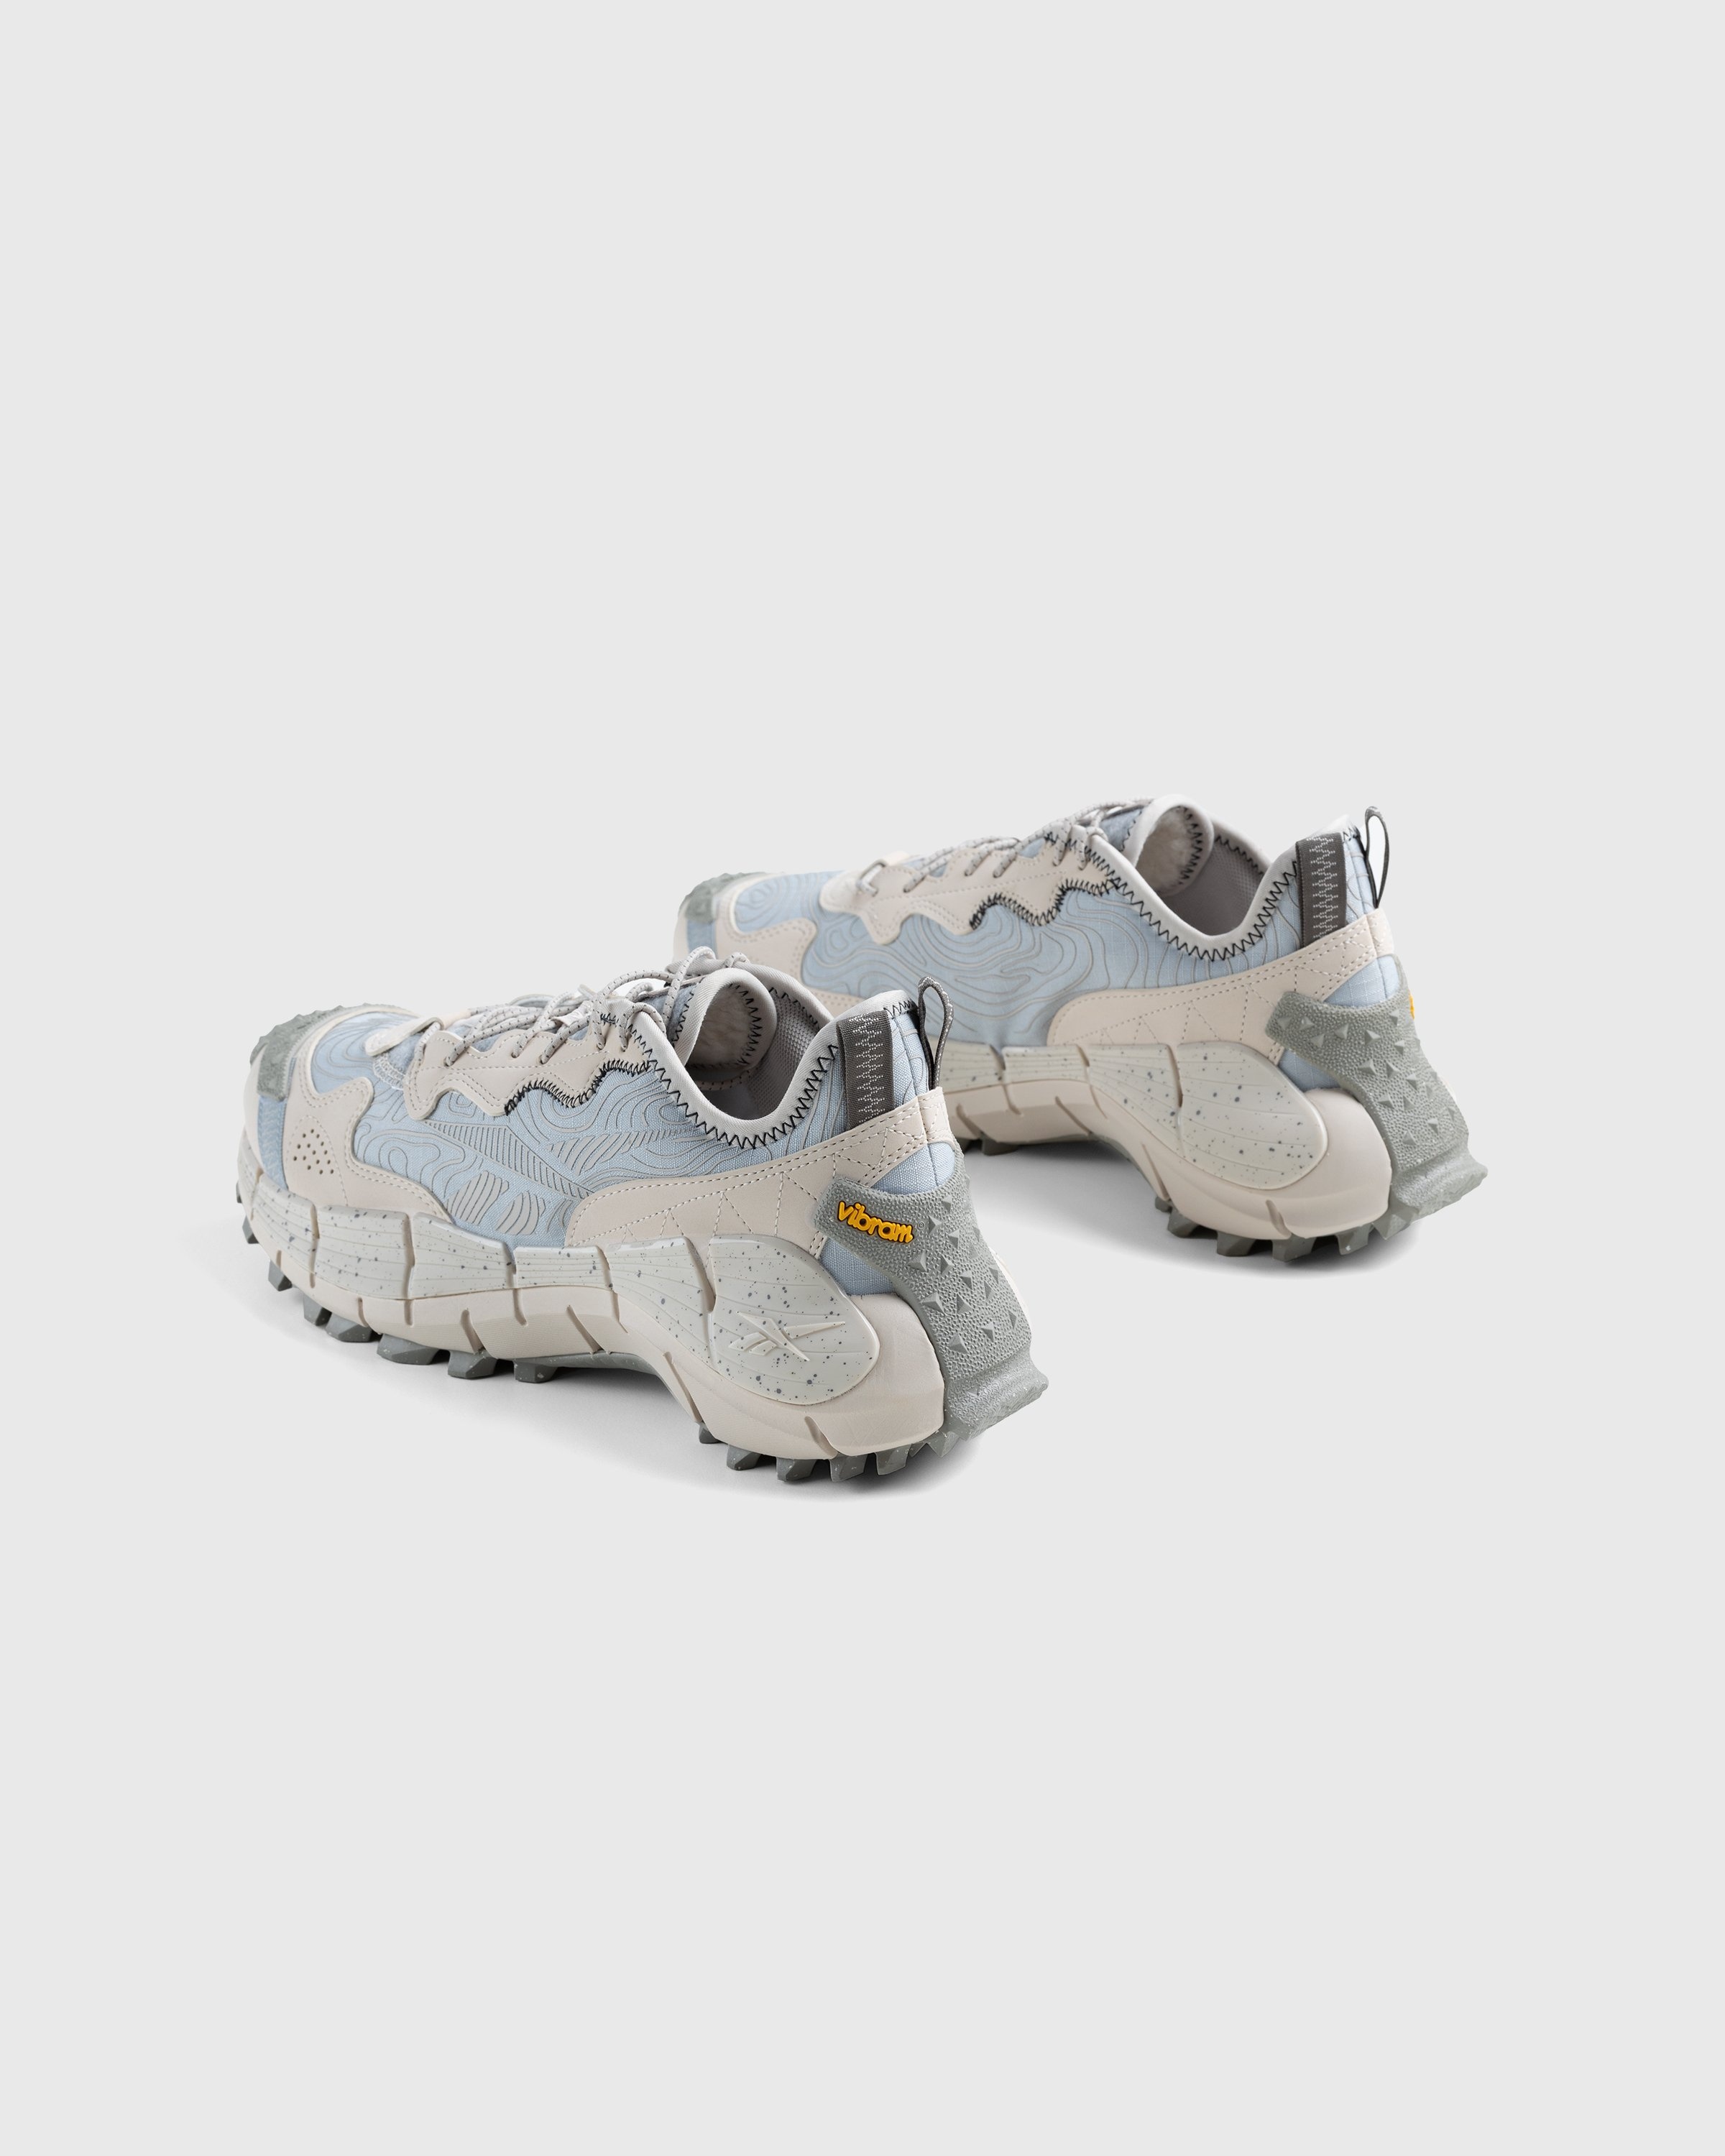 Reebok – Zig Kinetica II Edge Grey - Sneakers - Grey - Image 4